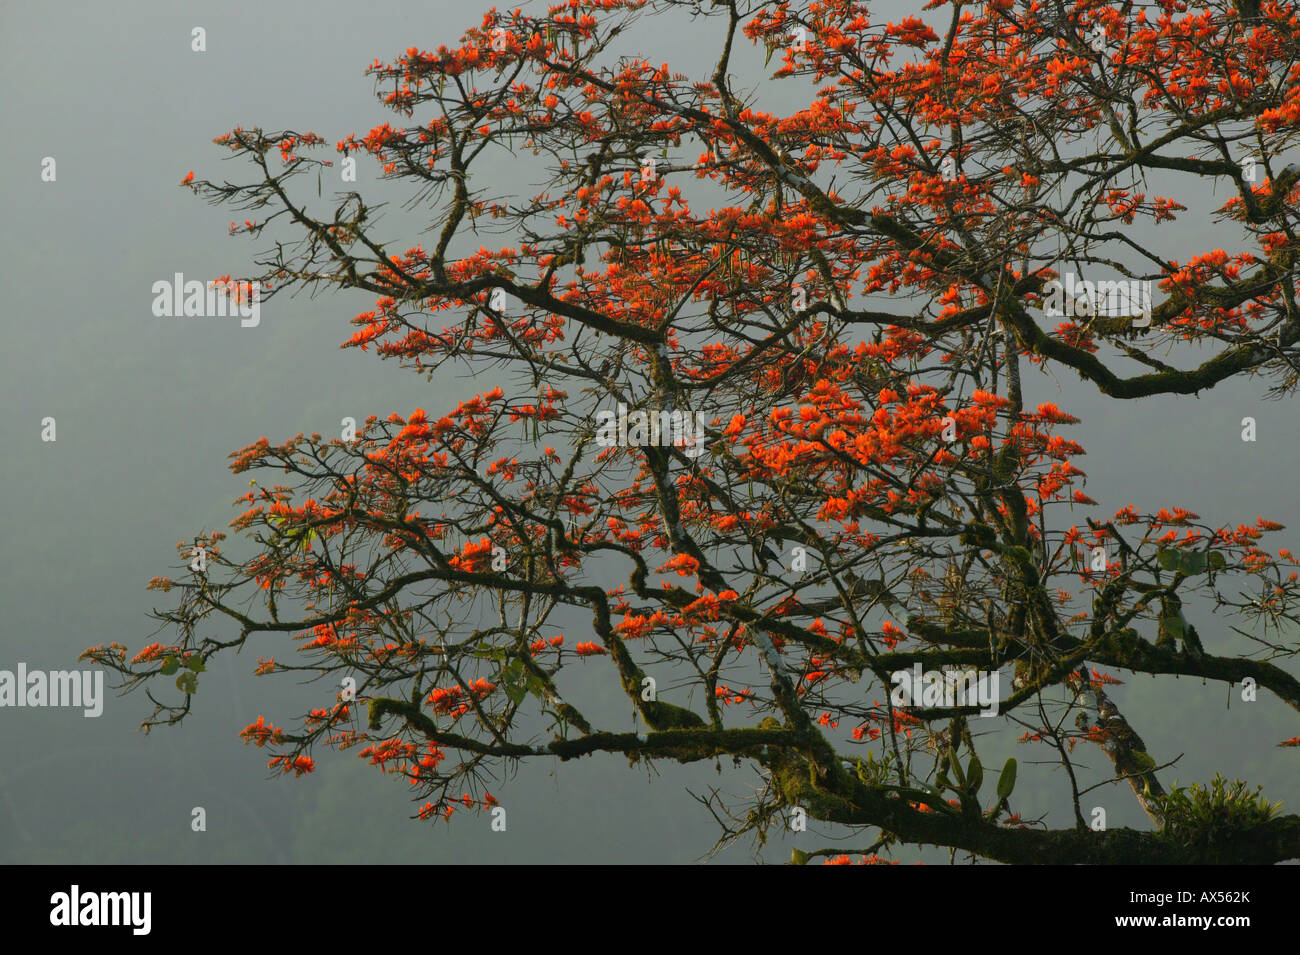 Belles fleurs sur un arbre près de la station de Cana dans le parc national de Darien, Darien Gap, province de Darien, République du Panama, Amérique centrale. Banque D'Images